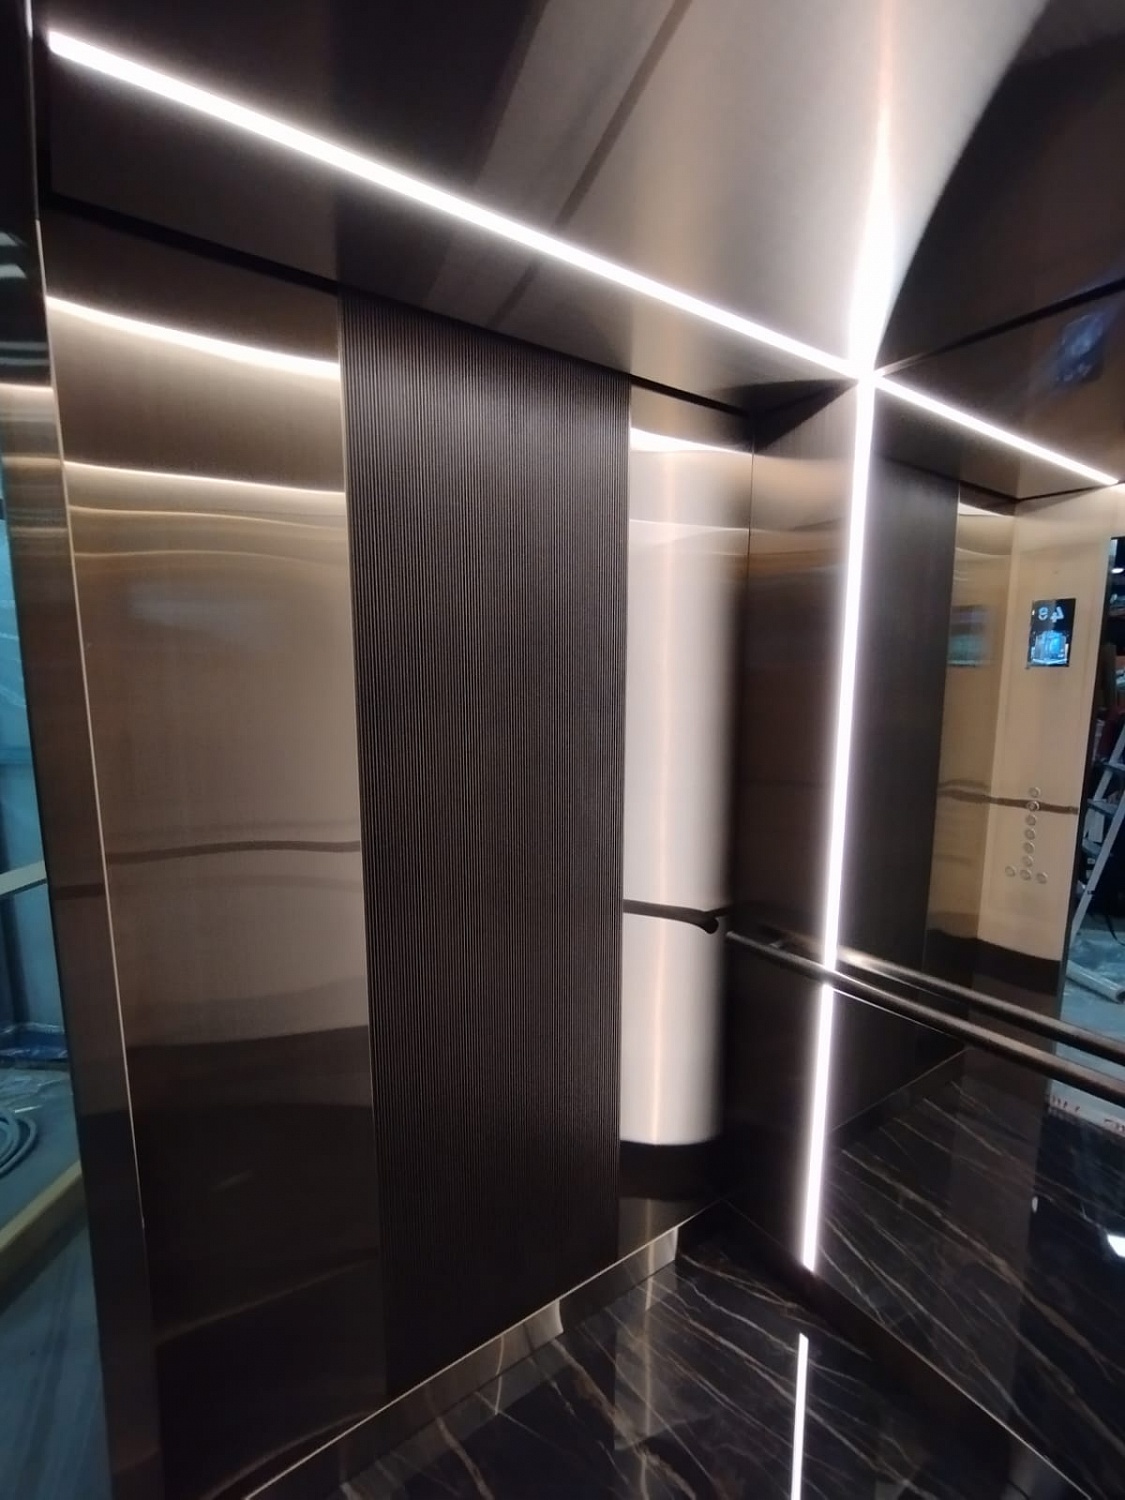 Щербинский завод представил лифт в эксклюзивном дизайне